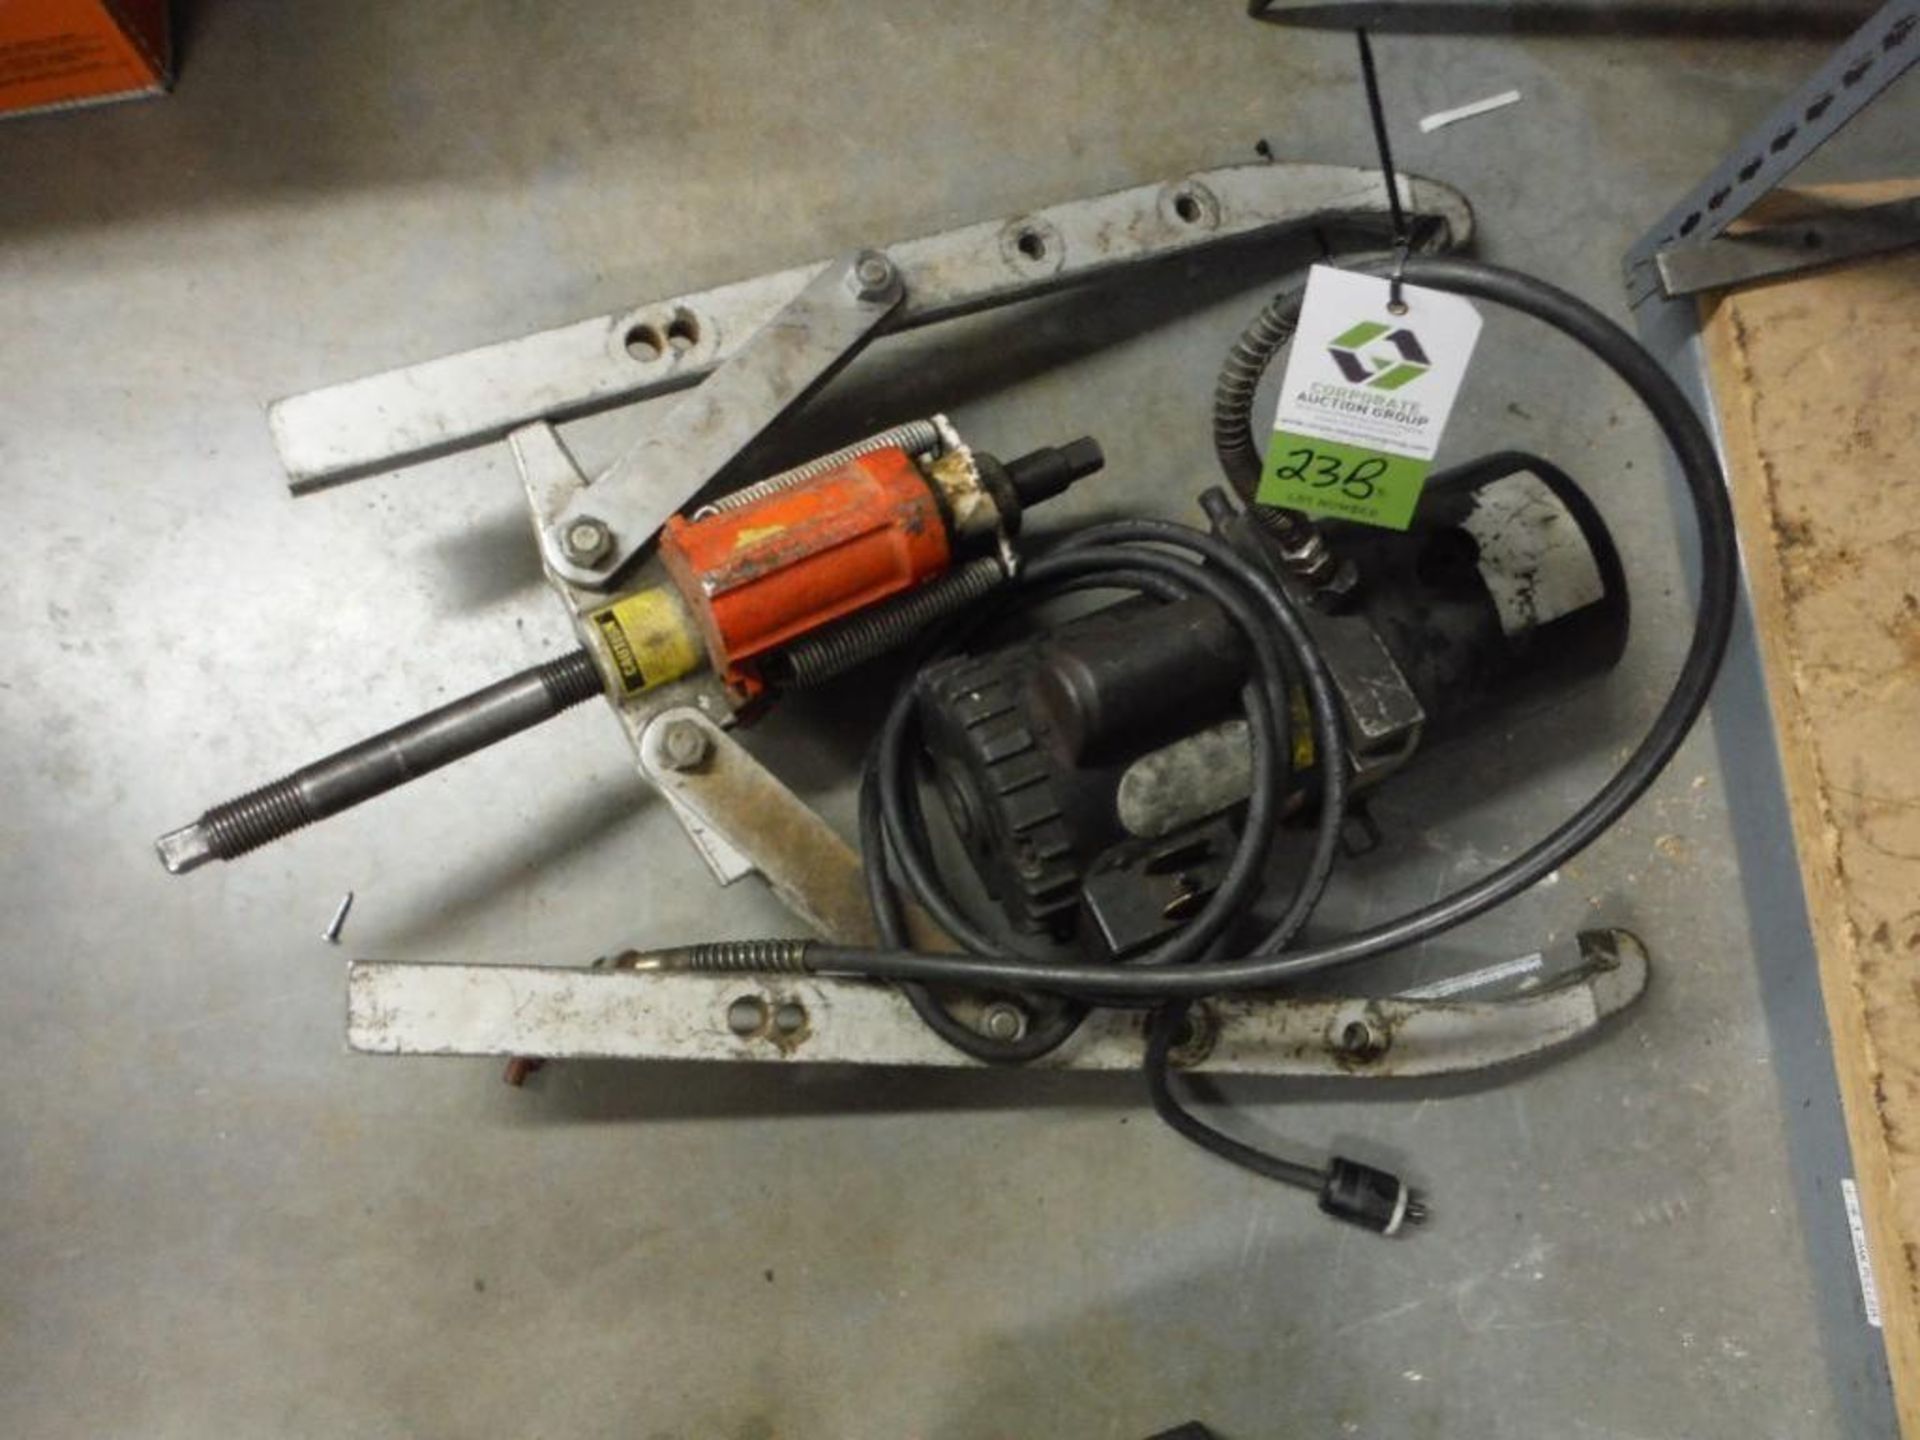 Large hydraulic gear puller. Rigging Fee: $25